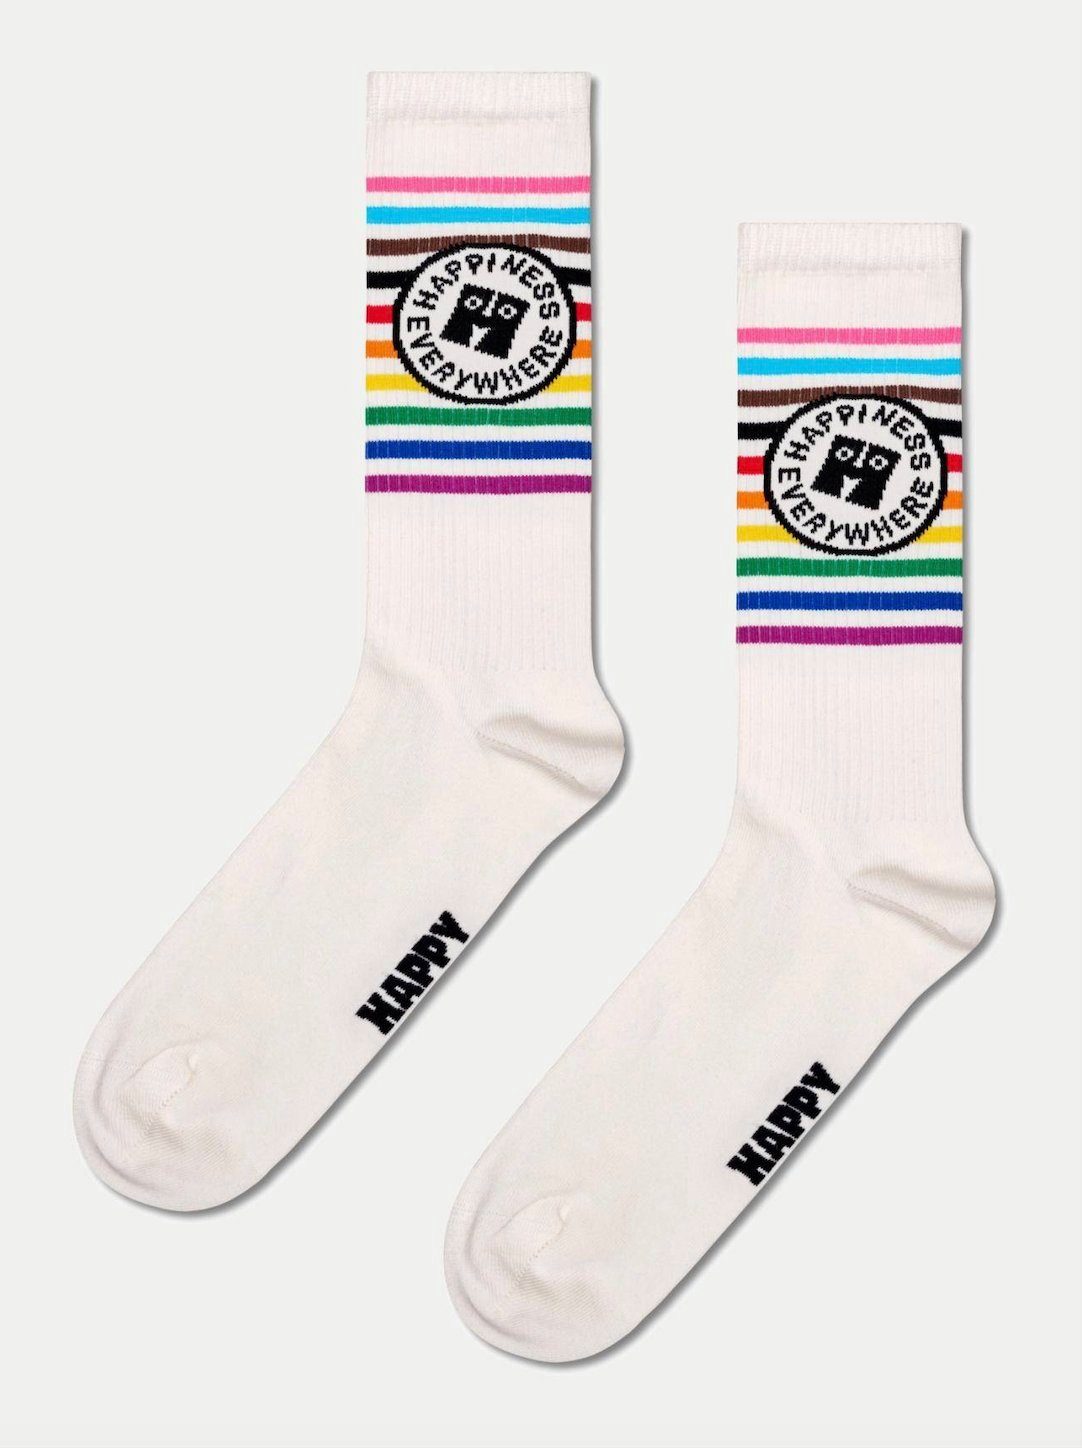 Freizeitsocken Pride Happy Socken Socks Happiness